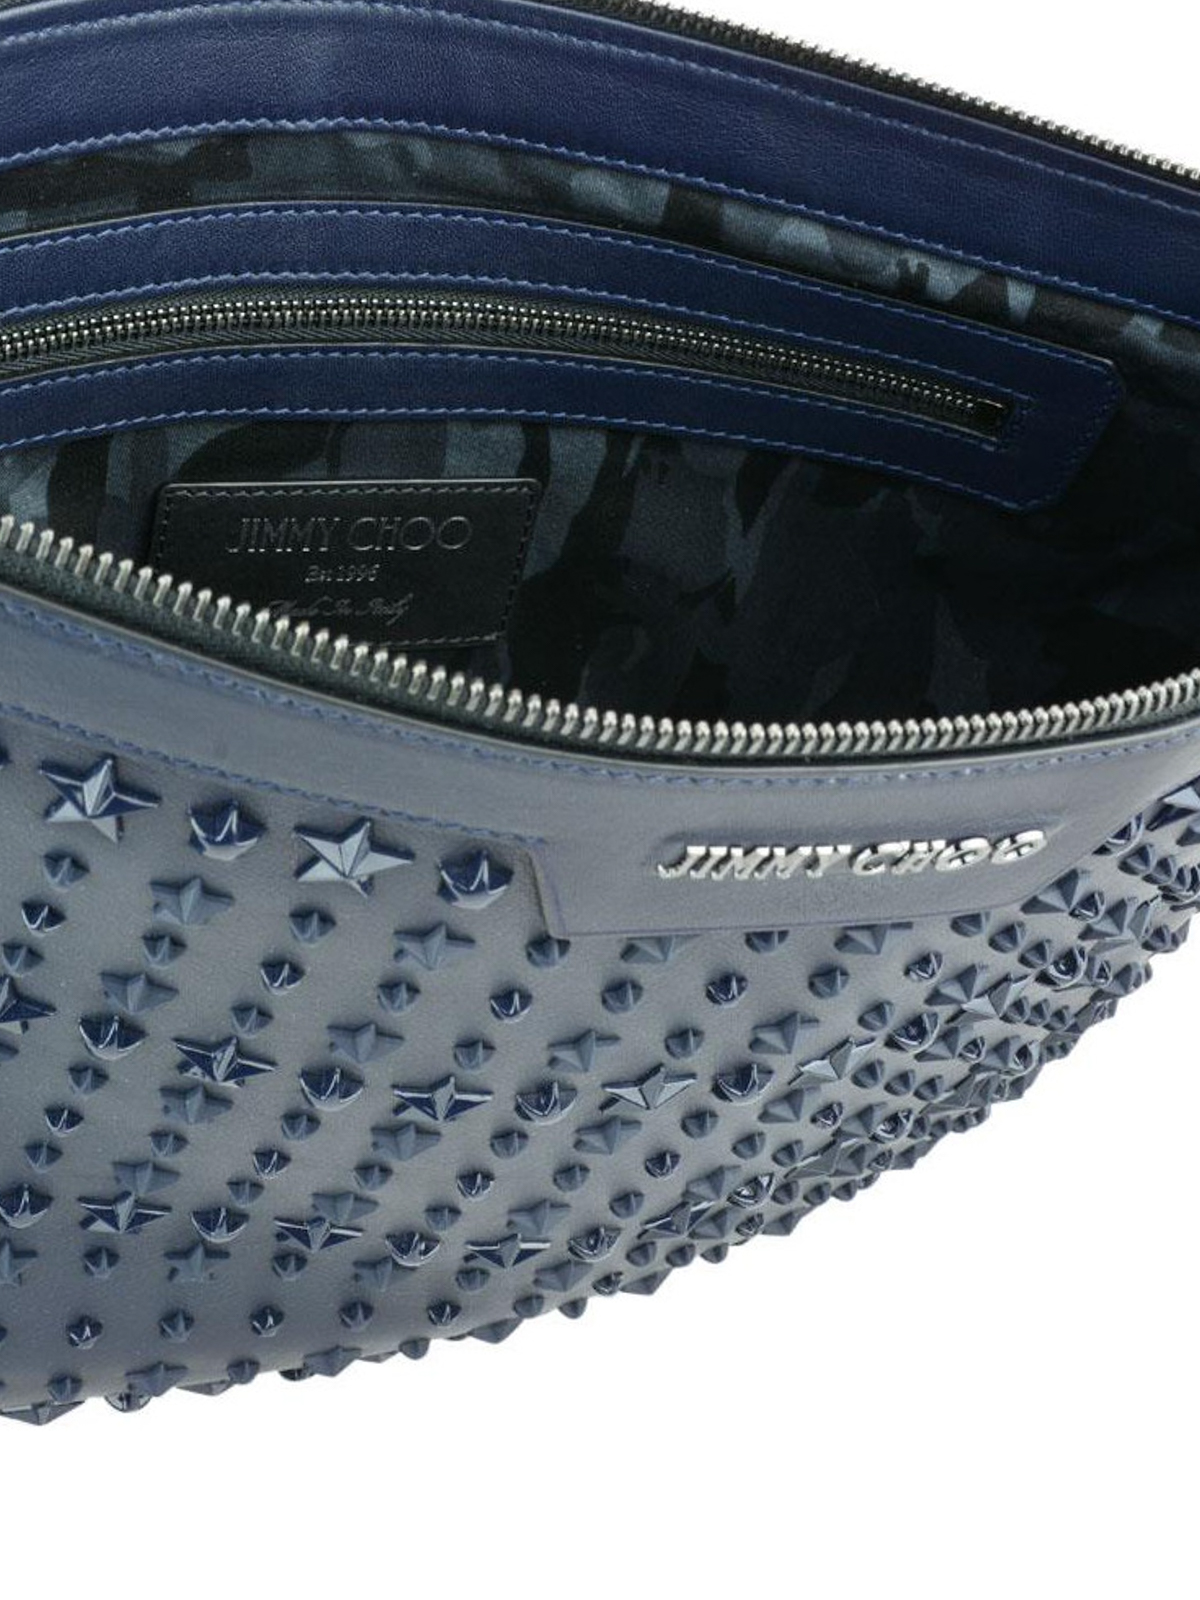 Men's luxury bags - Derek Jimmy Choo blue clutch with stars